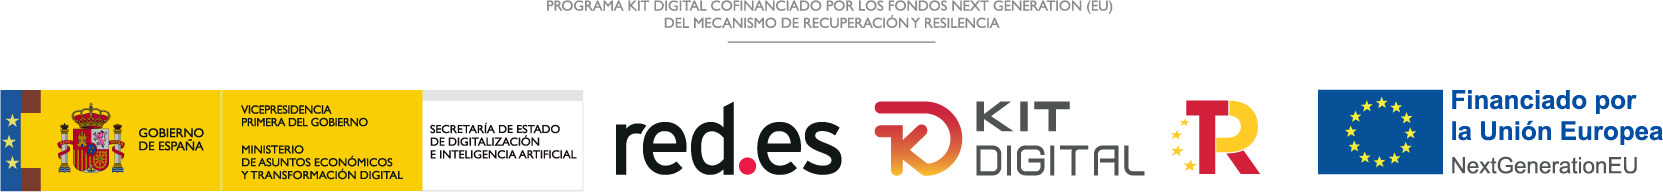 Digital Kit EU Funds Logos